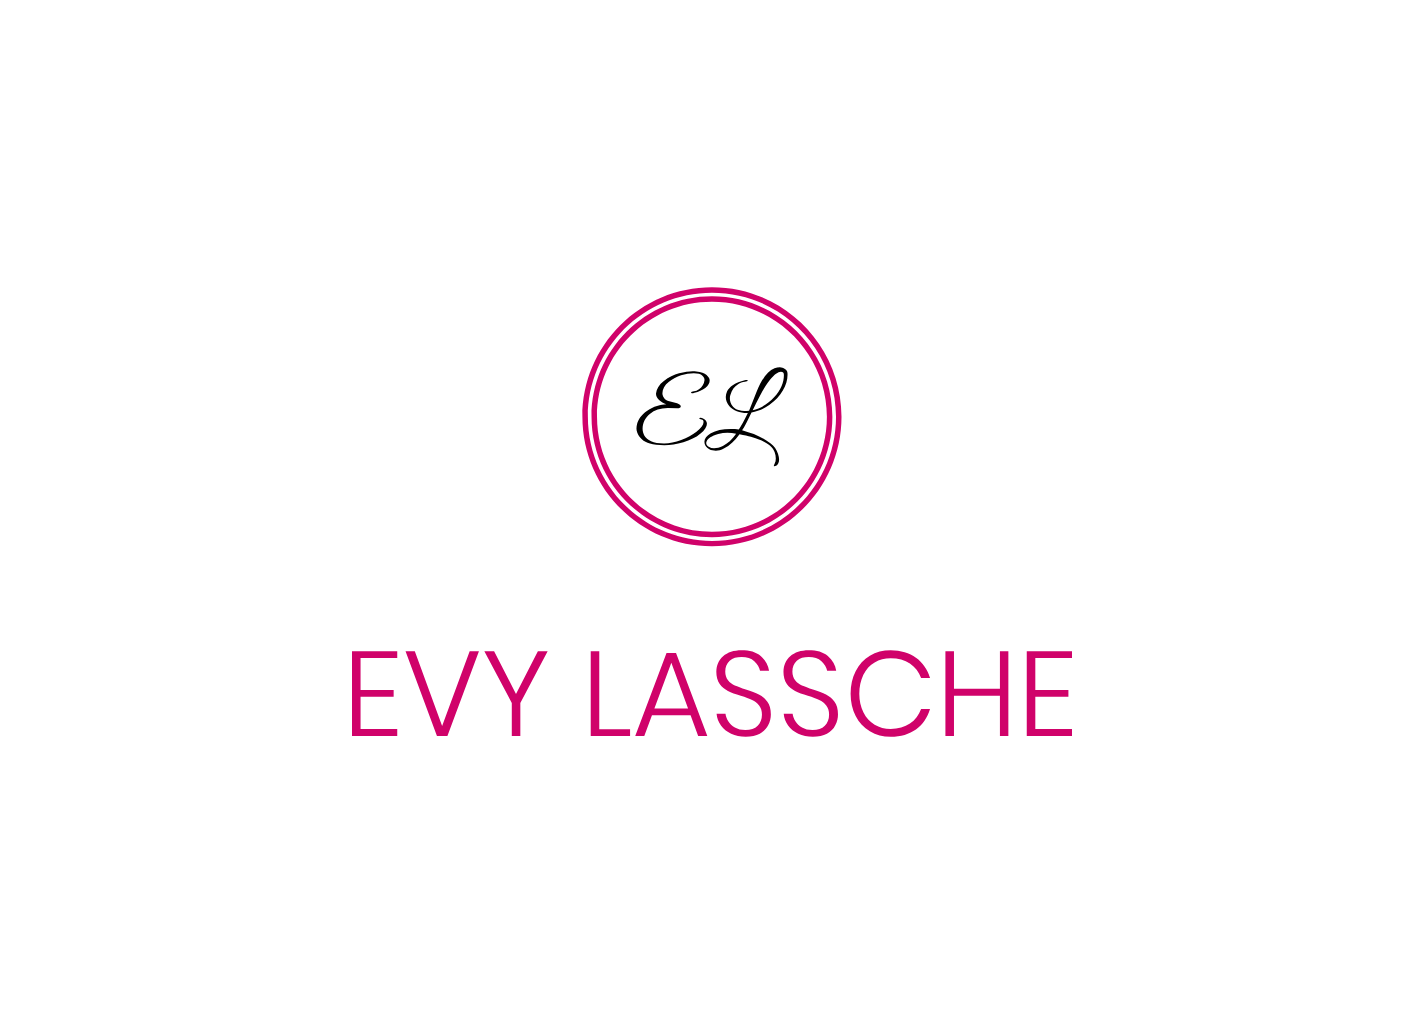 Evy Lassche